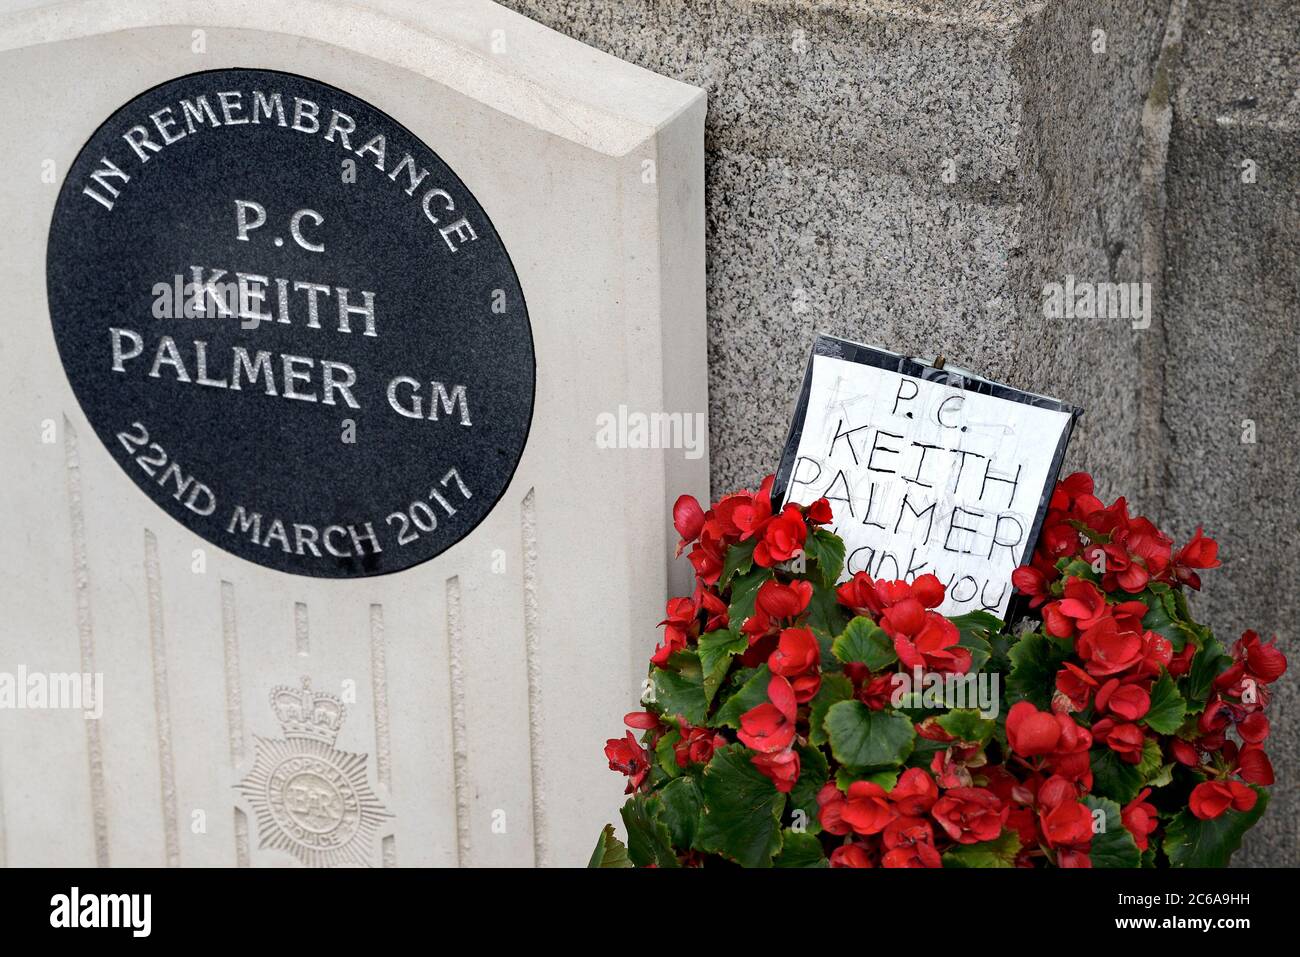 London, England, Großbritannien. Denkmal für P. C. Keith Palmer vor dem Parlamentsgebäude, mit Rosen und einer Dankesnote, Juli 2020 Stockfoto